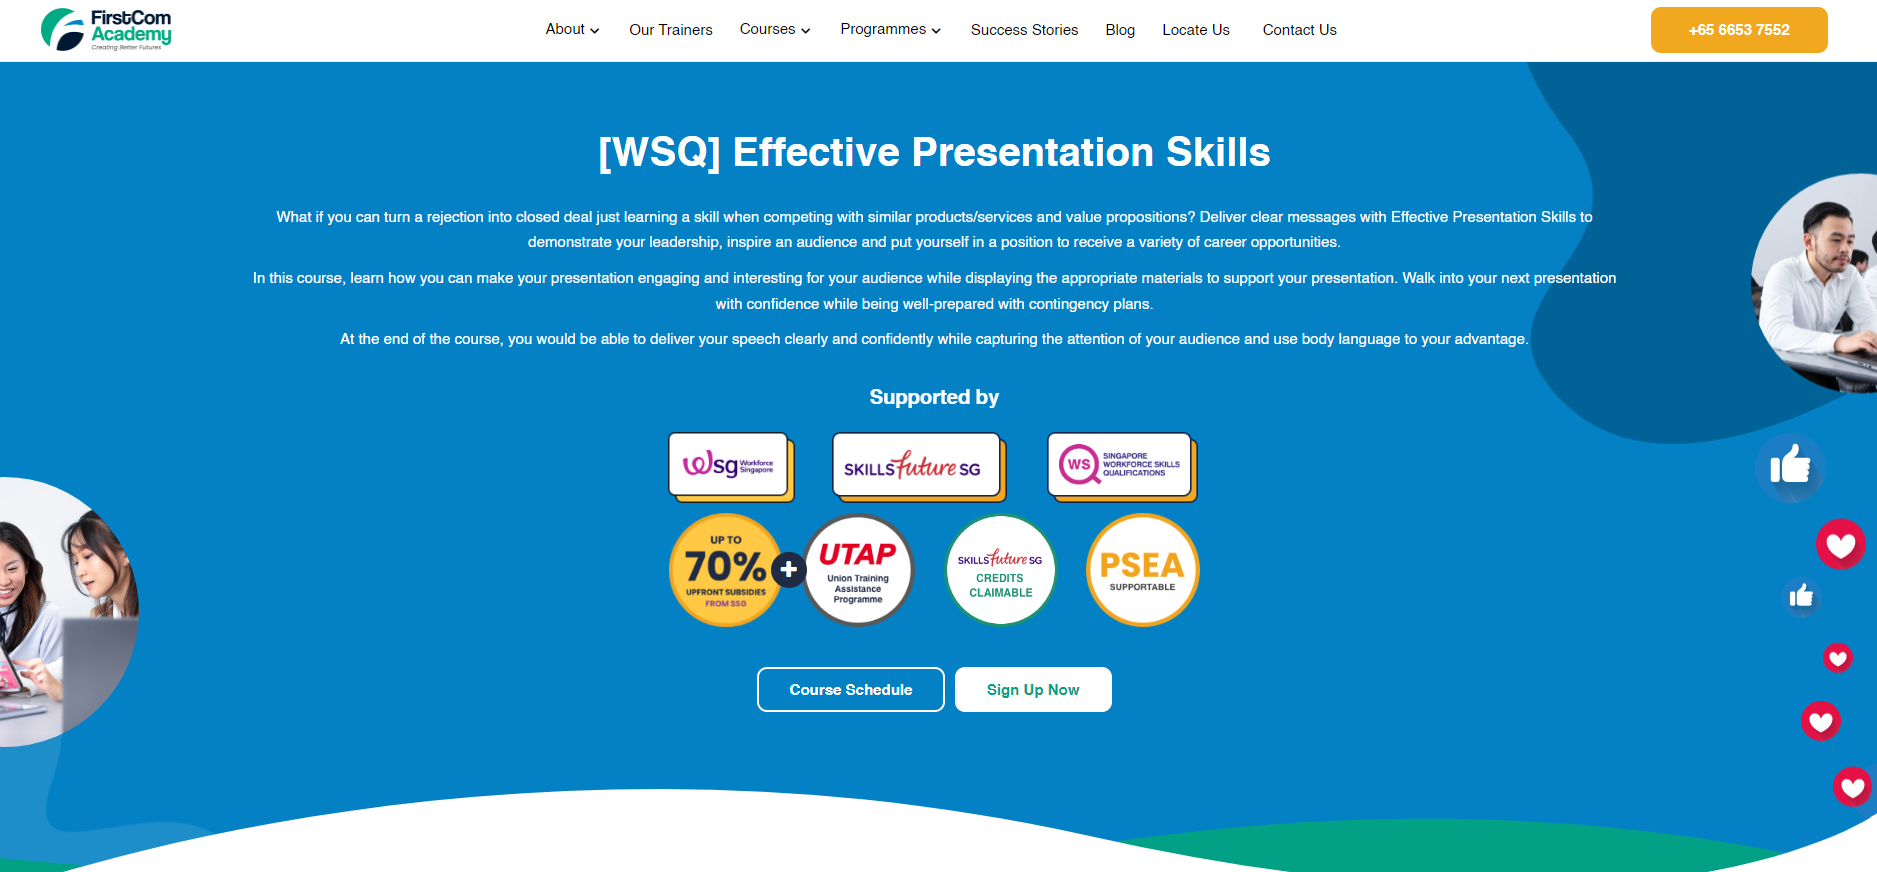 Screenshot of Firstcom Academy presentation training course